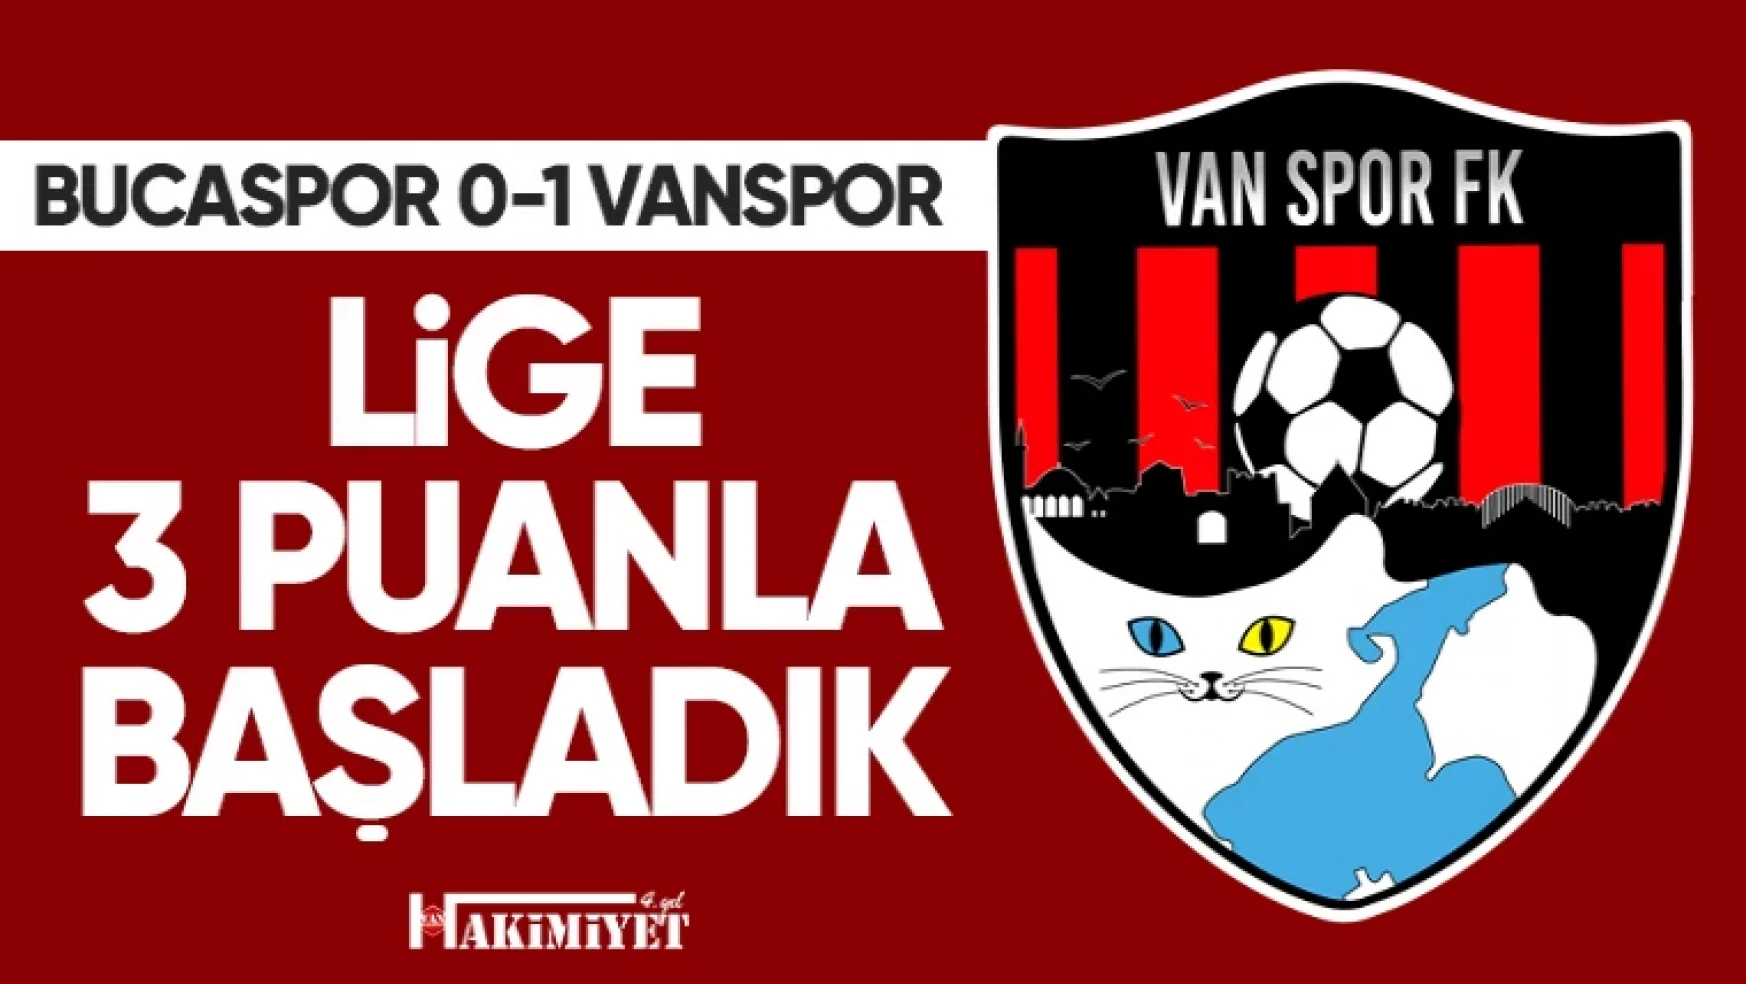 Vanspor sezonu 3 puanla açtı! Bucaspor 0-1 Vanspor FK